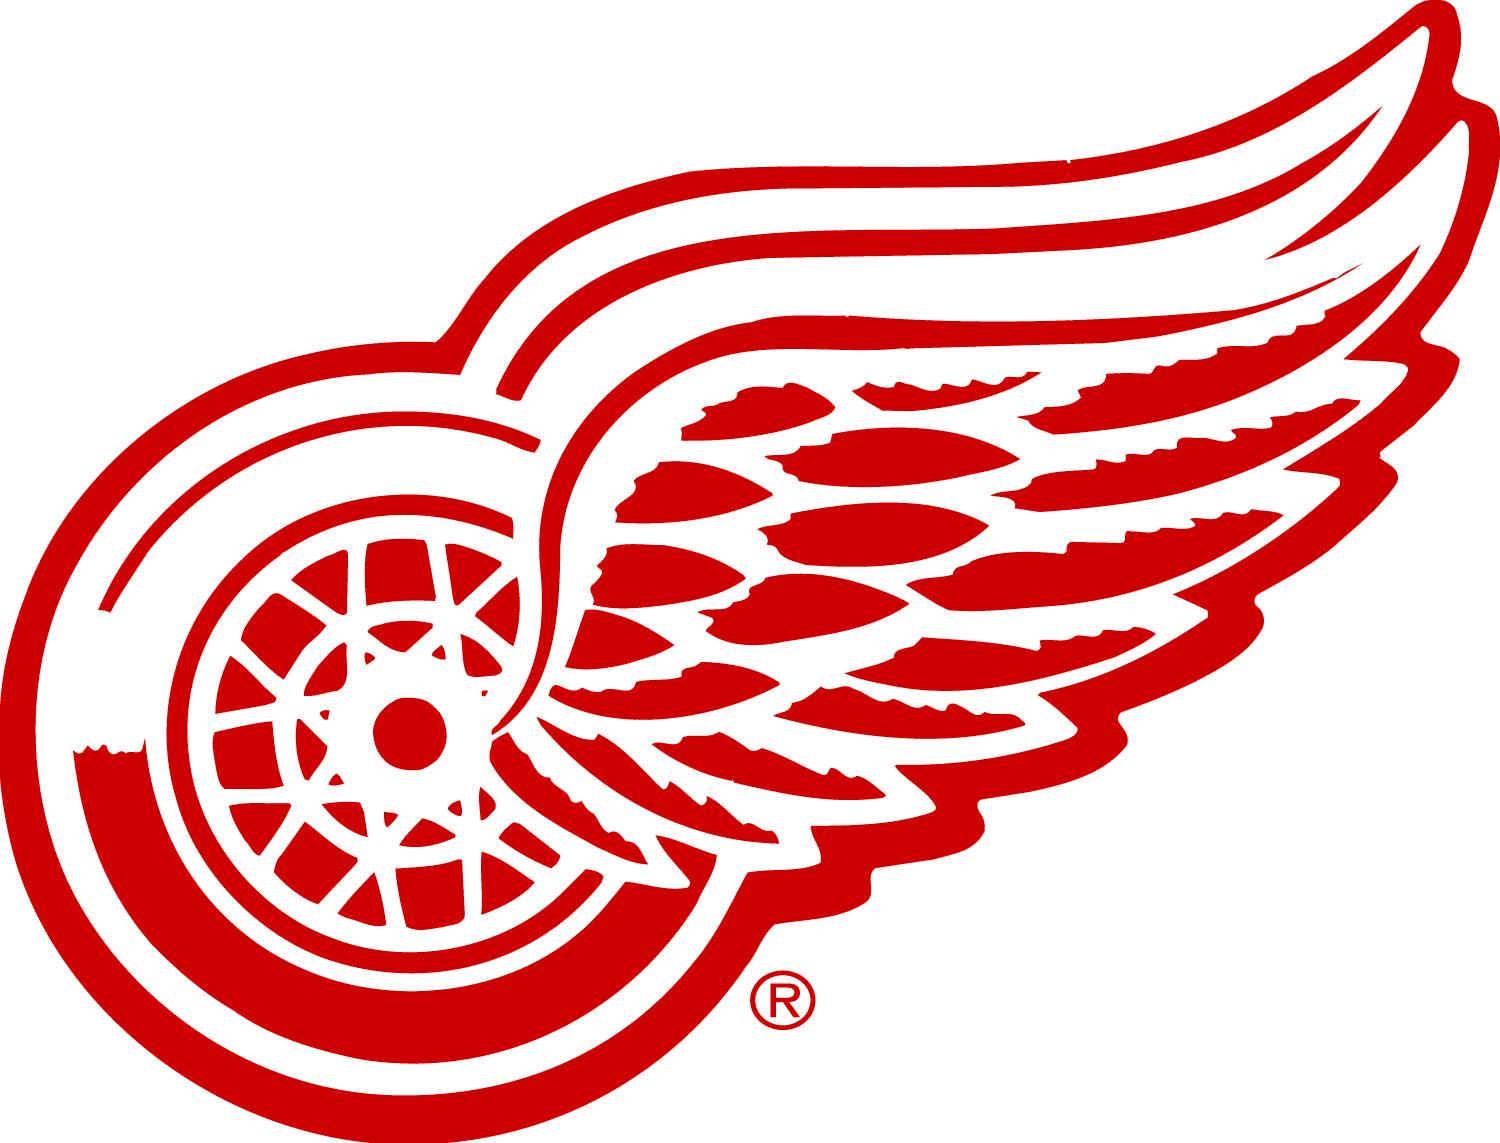 Detroit Red Wings Logo из архива, распечатайте наши фотографии